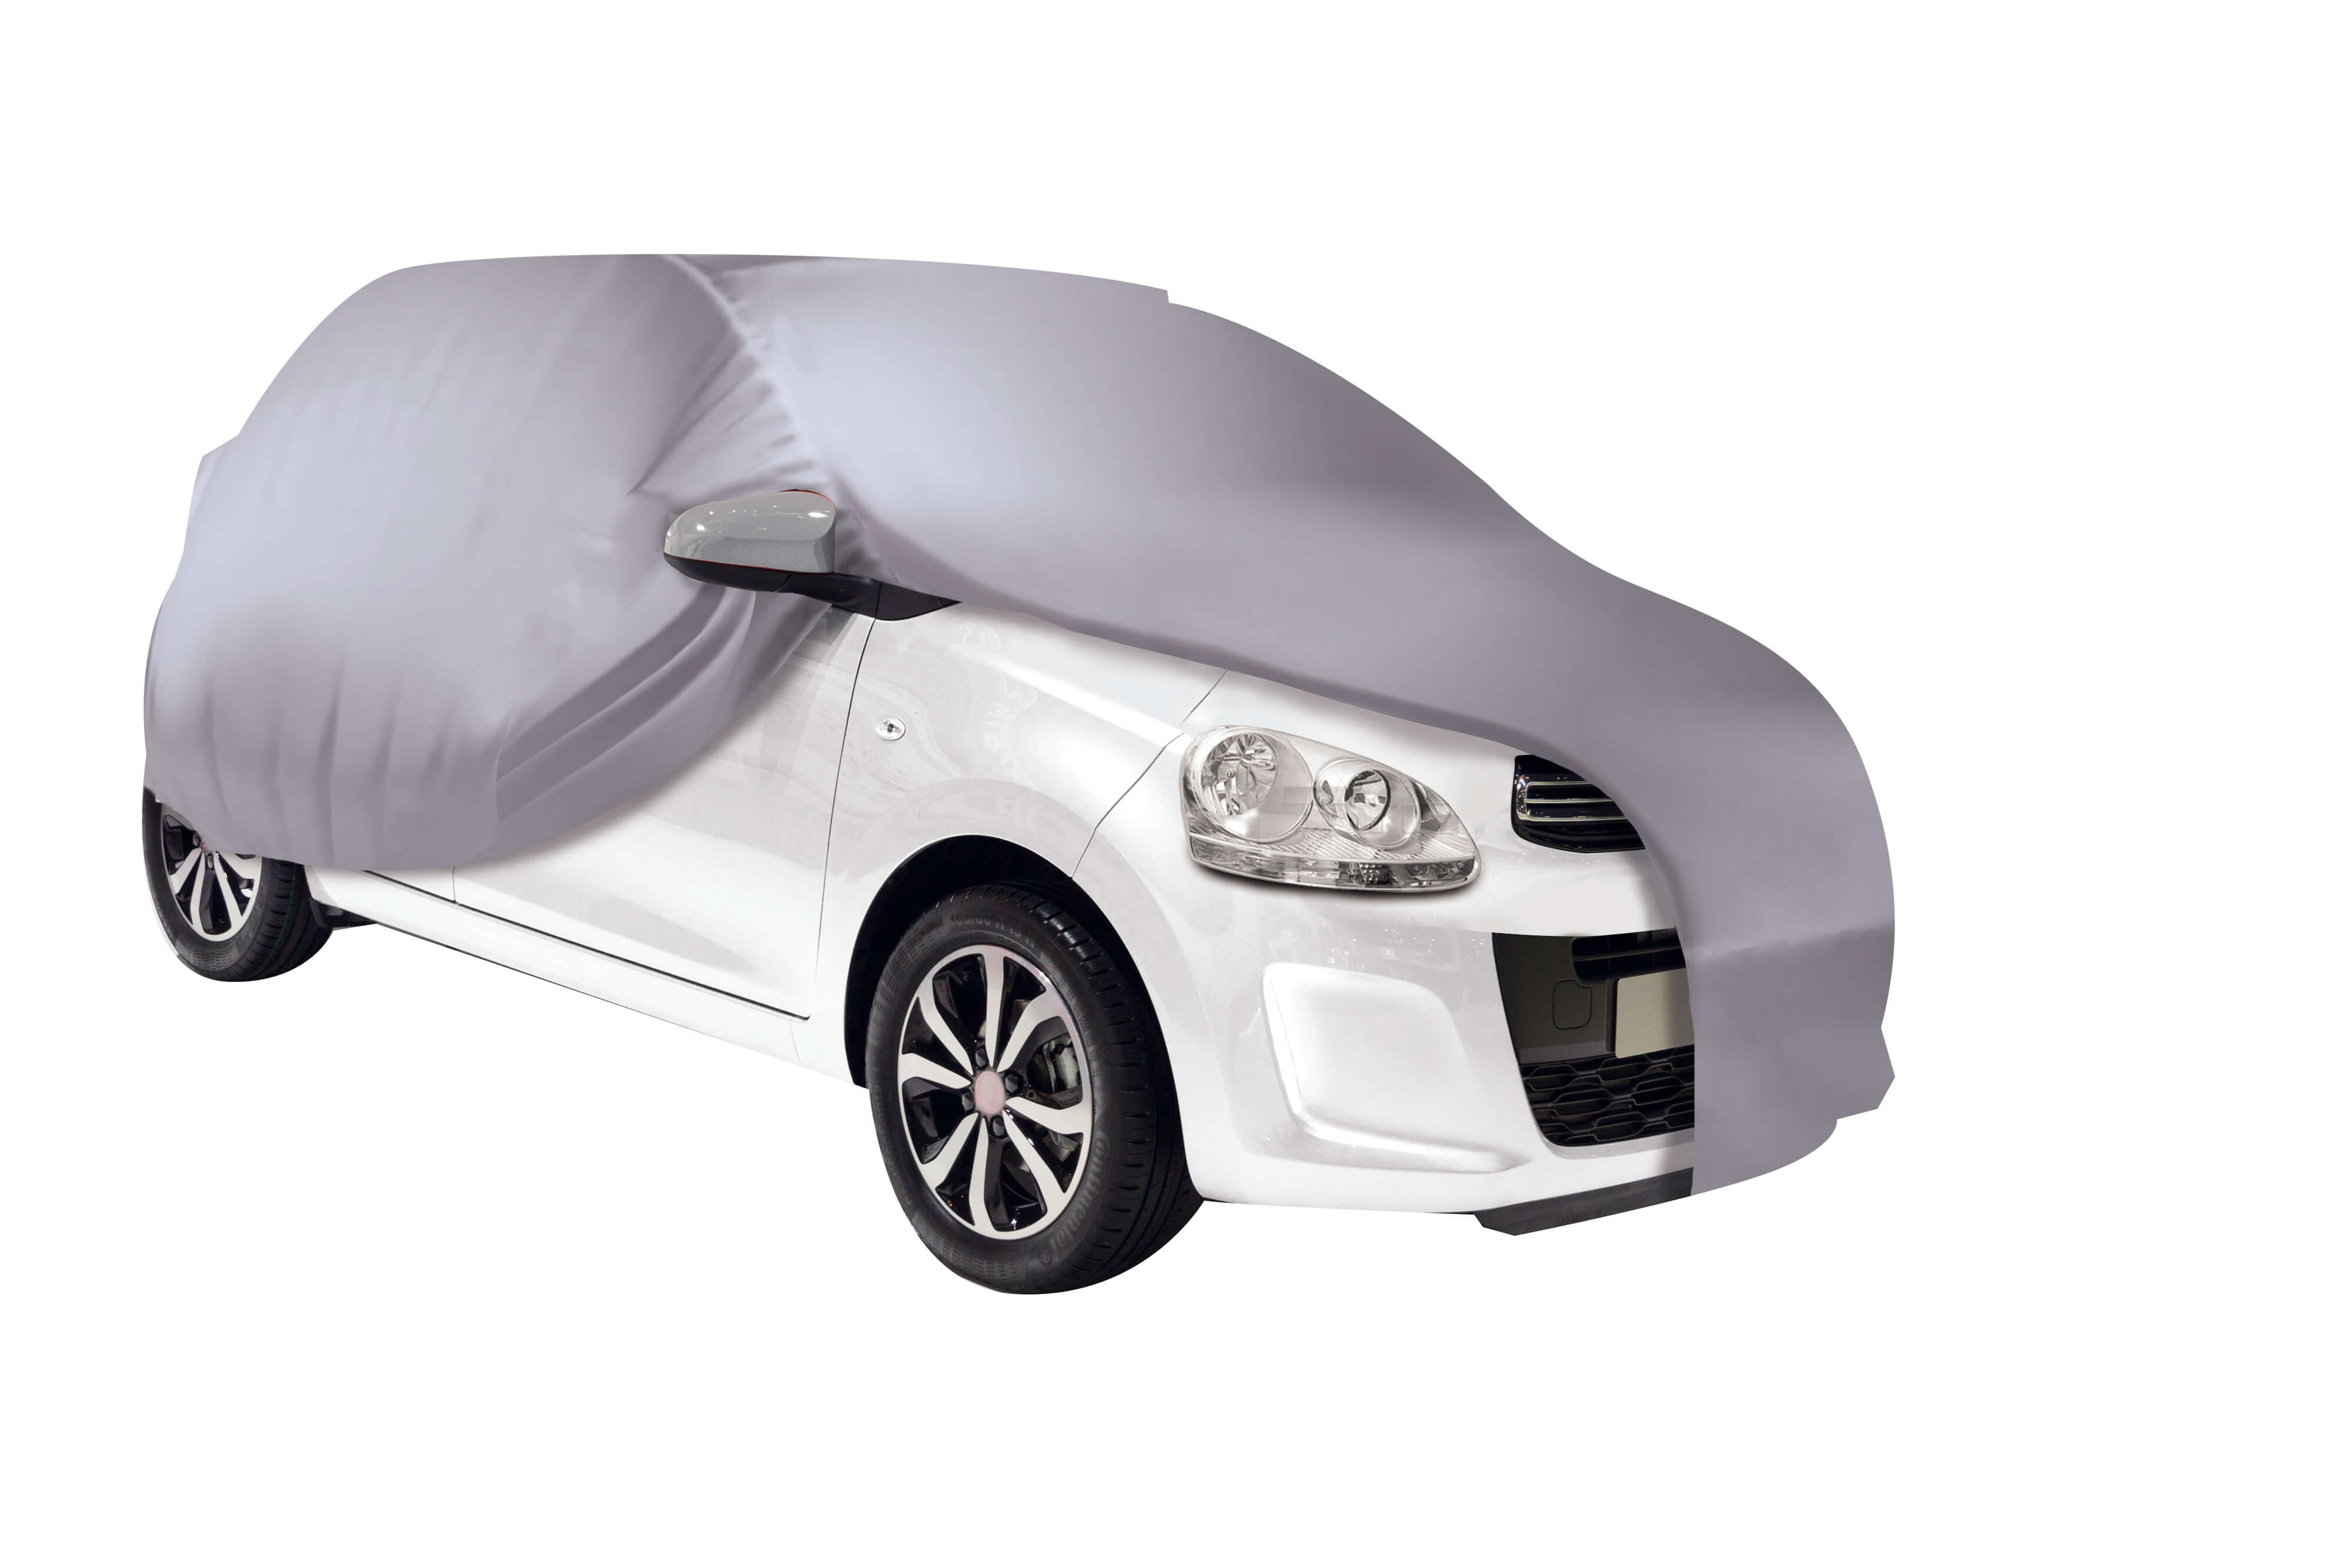 Housse de protection carrosserie auto CAR + double couche taille L -  480x175x120cm - Habill'Auto